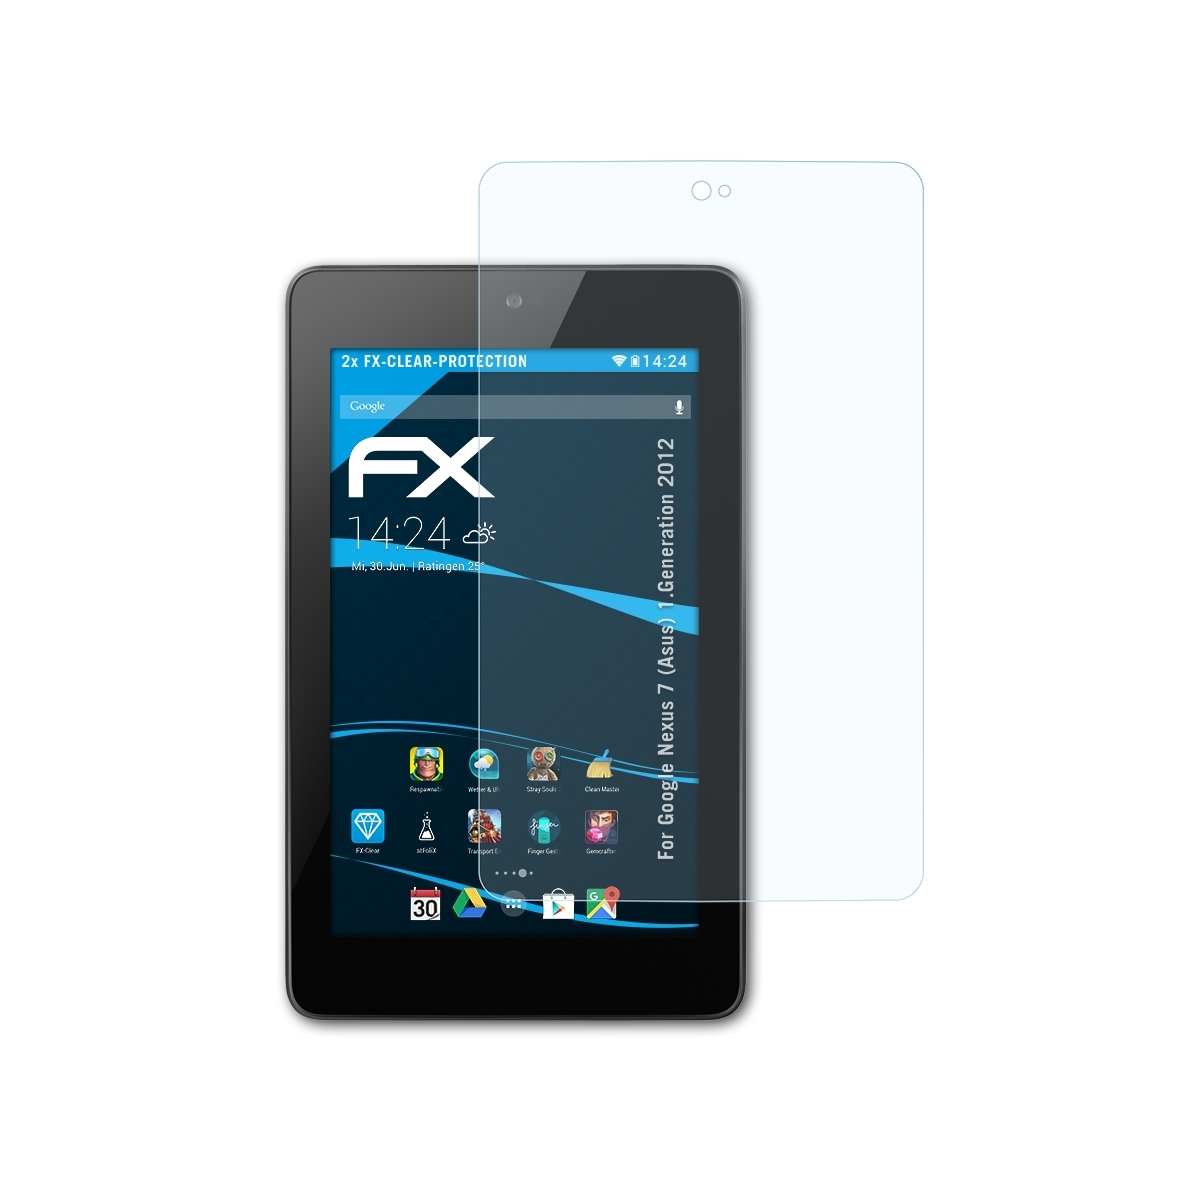 (1.Generation Nexus ATFOLIX (Asus) Google 2012)) 2x Displayschutz(für FX-Clear 7